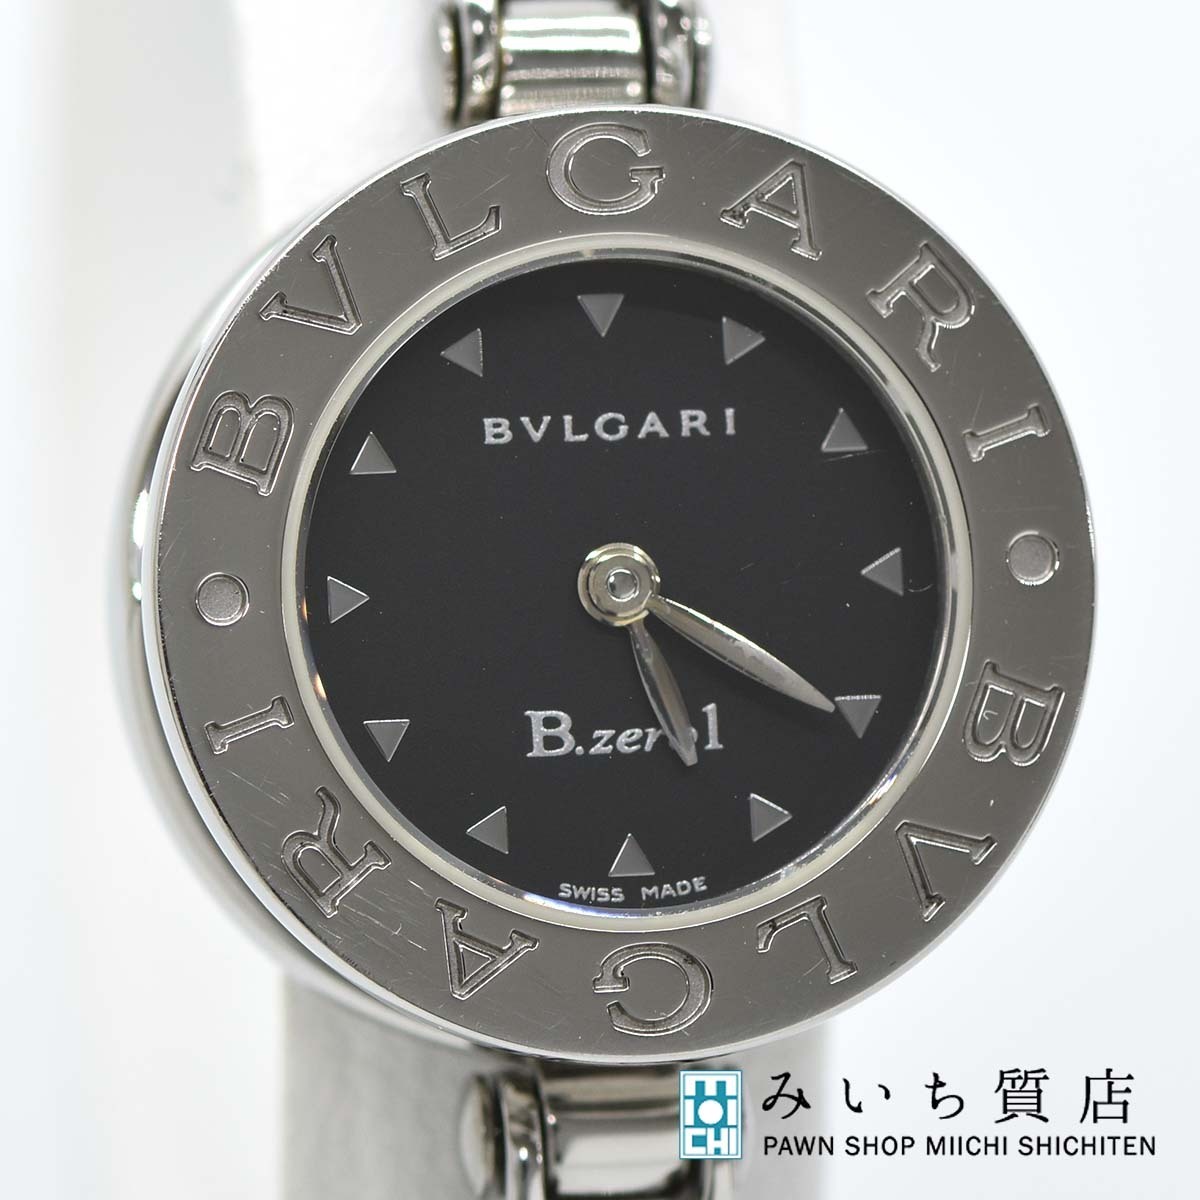 【現金特価】 S 22 BZ ビーゼロワン B-ZERO1 ブルガリ BVLGARI 腕時計 質屋 クォーツ みいち質店 2022年4月18日電池交換済 レディース ビーゼロワン